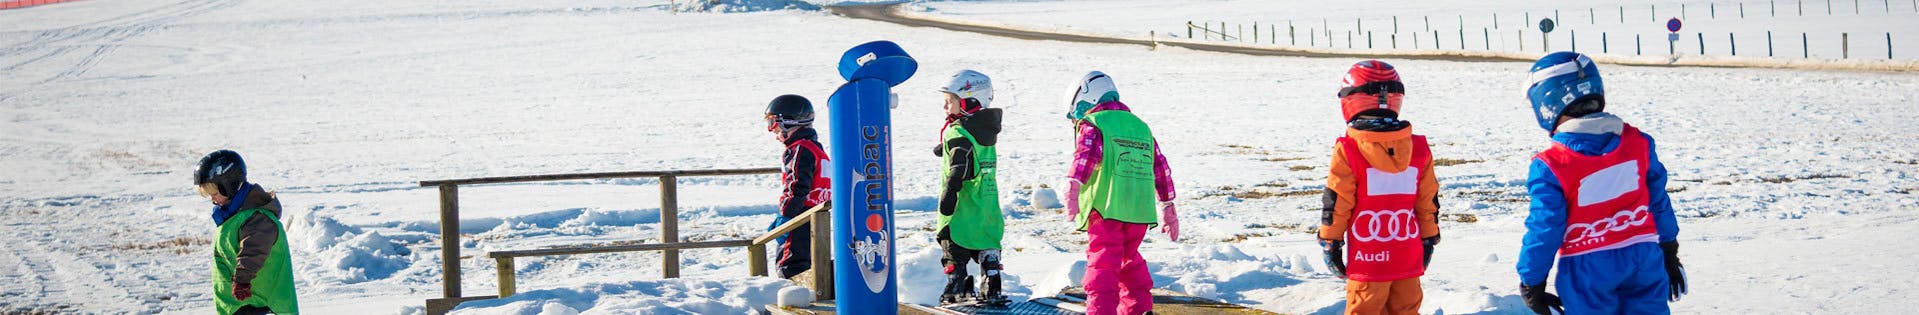 Cours de ski Enfants dès 4 ans pour Débutants avec Ski School Snow & Bike Factory Willingen.